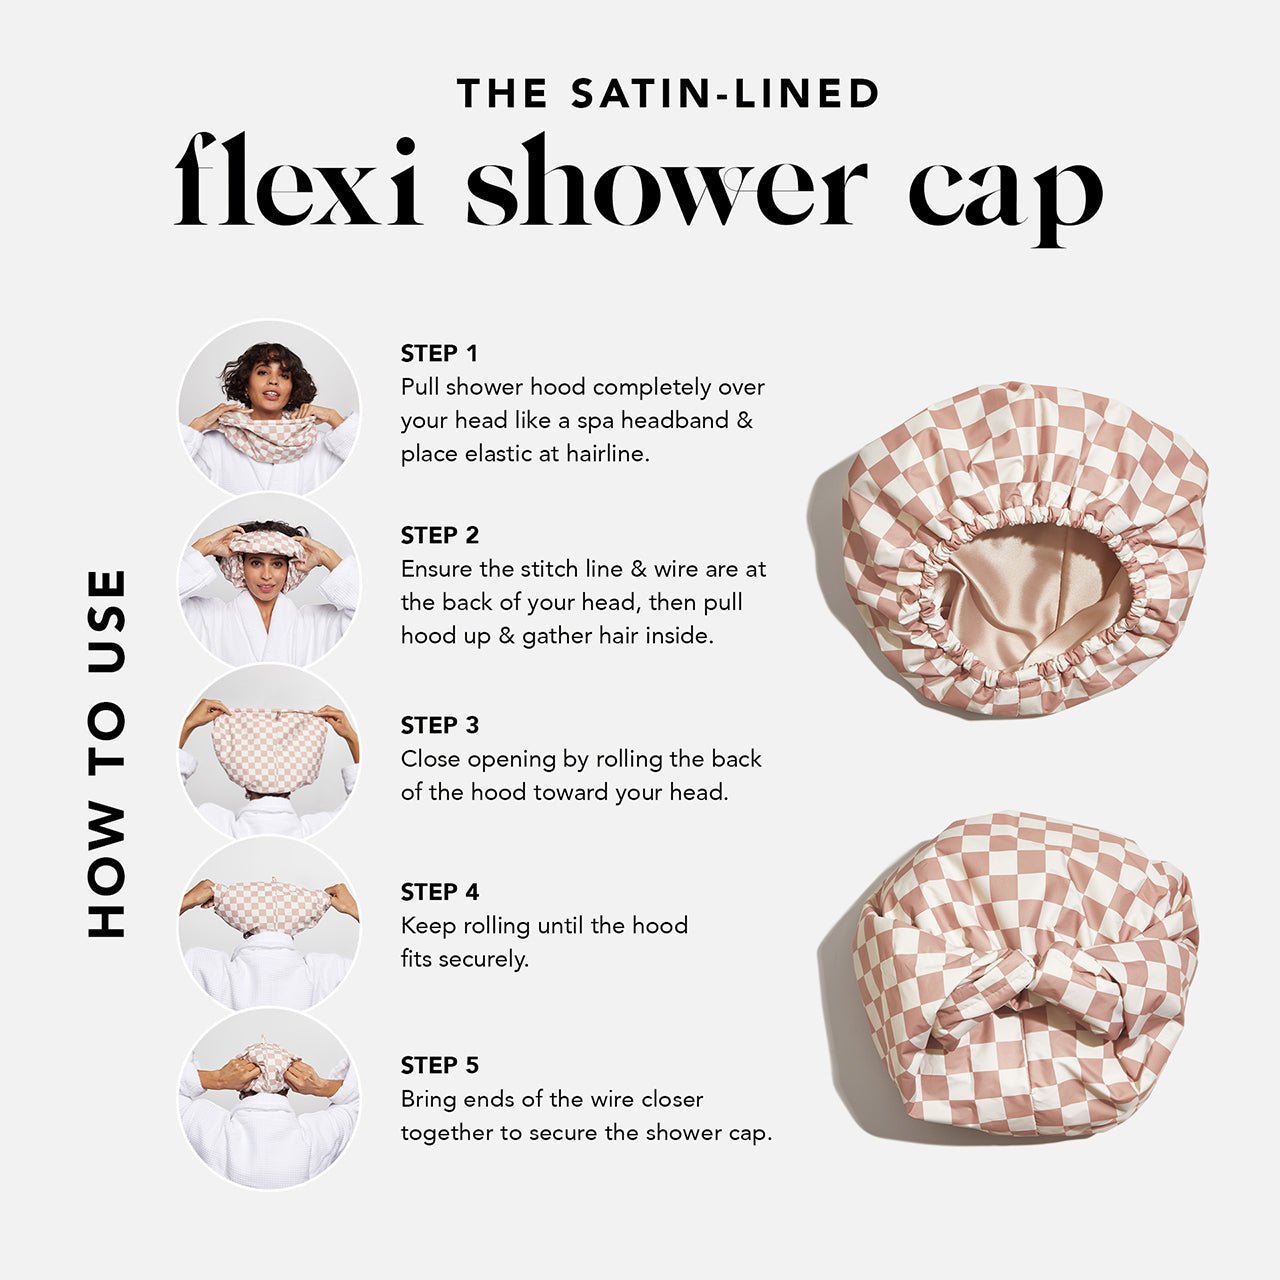 Σατέν με επένδυση Flexi Shower Cap + XL Hair Towel Bundle